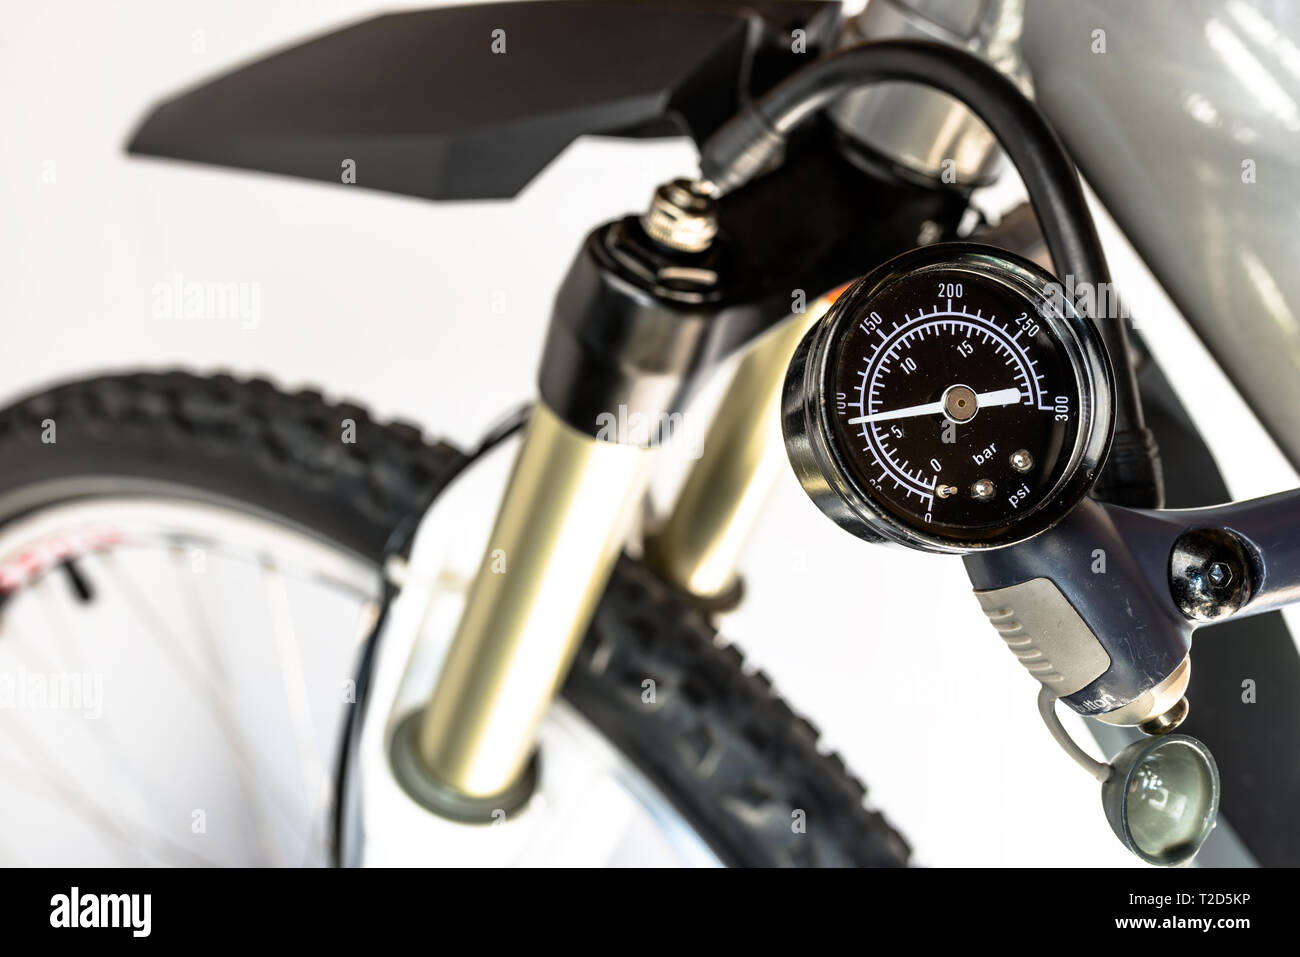 Pumpen von der Vorderseite, Fahrradverleih, Öl-Stoßdämpfer mit einer spezialisierten Handpumpe, sichtbar Druck Anzeige in Einheiten von bar/psi. Stockfoto